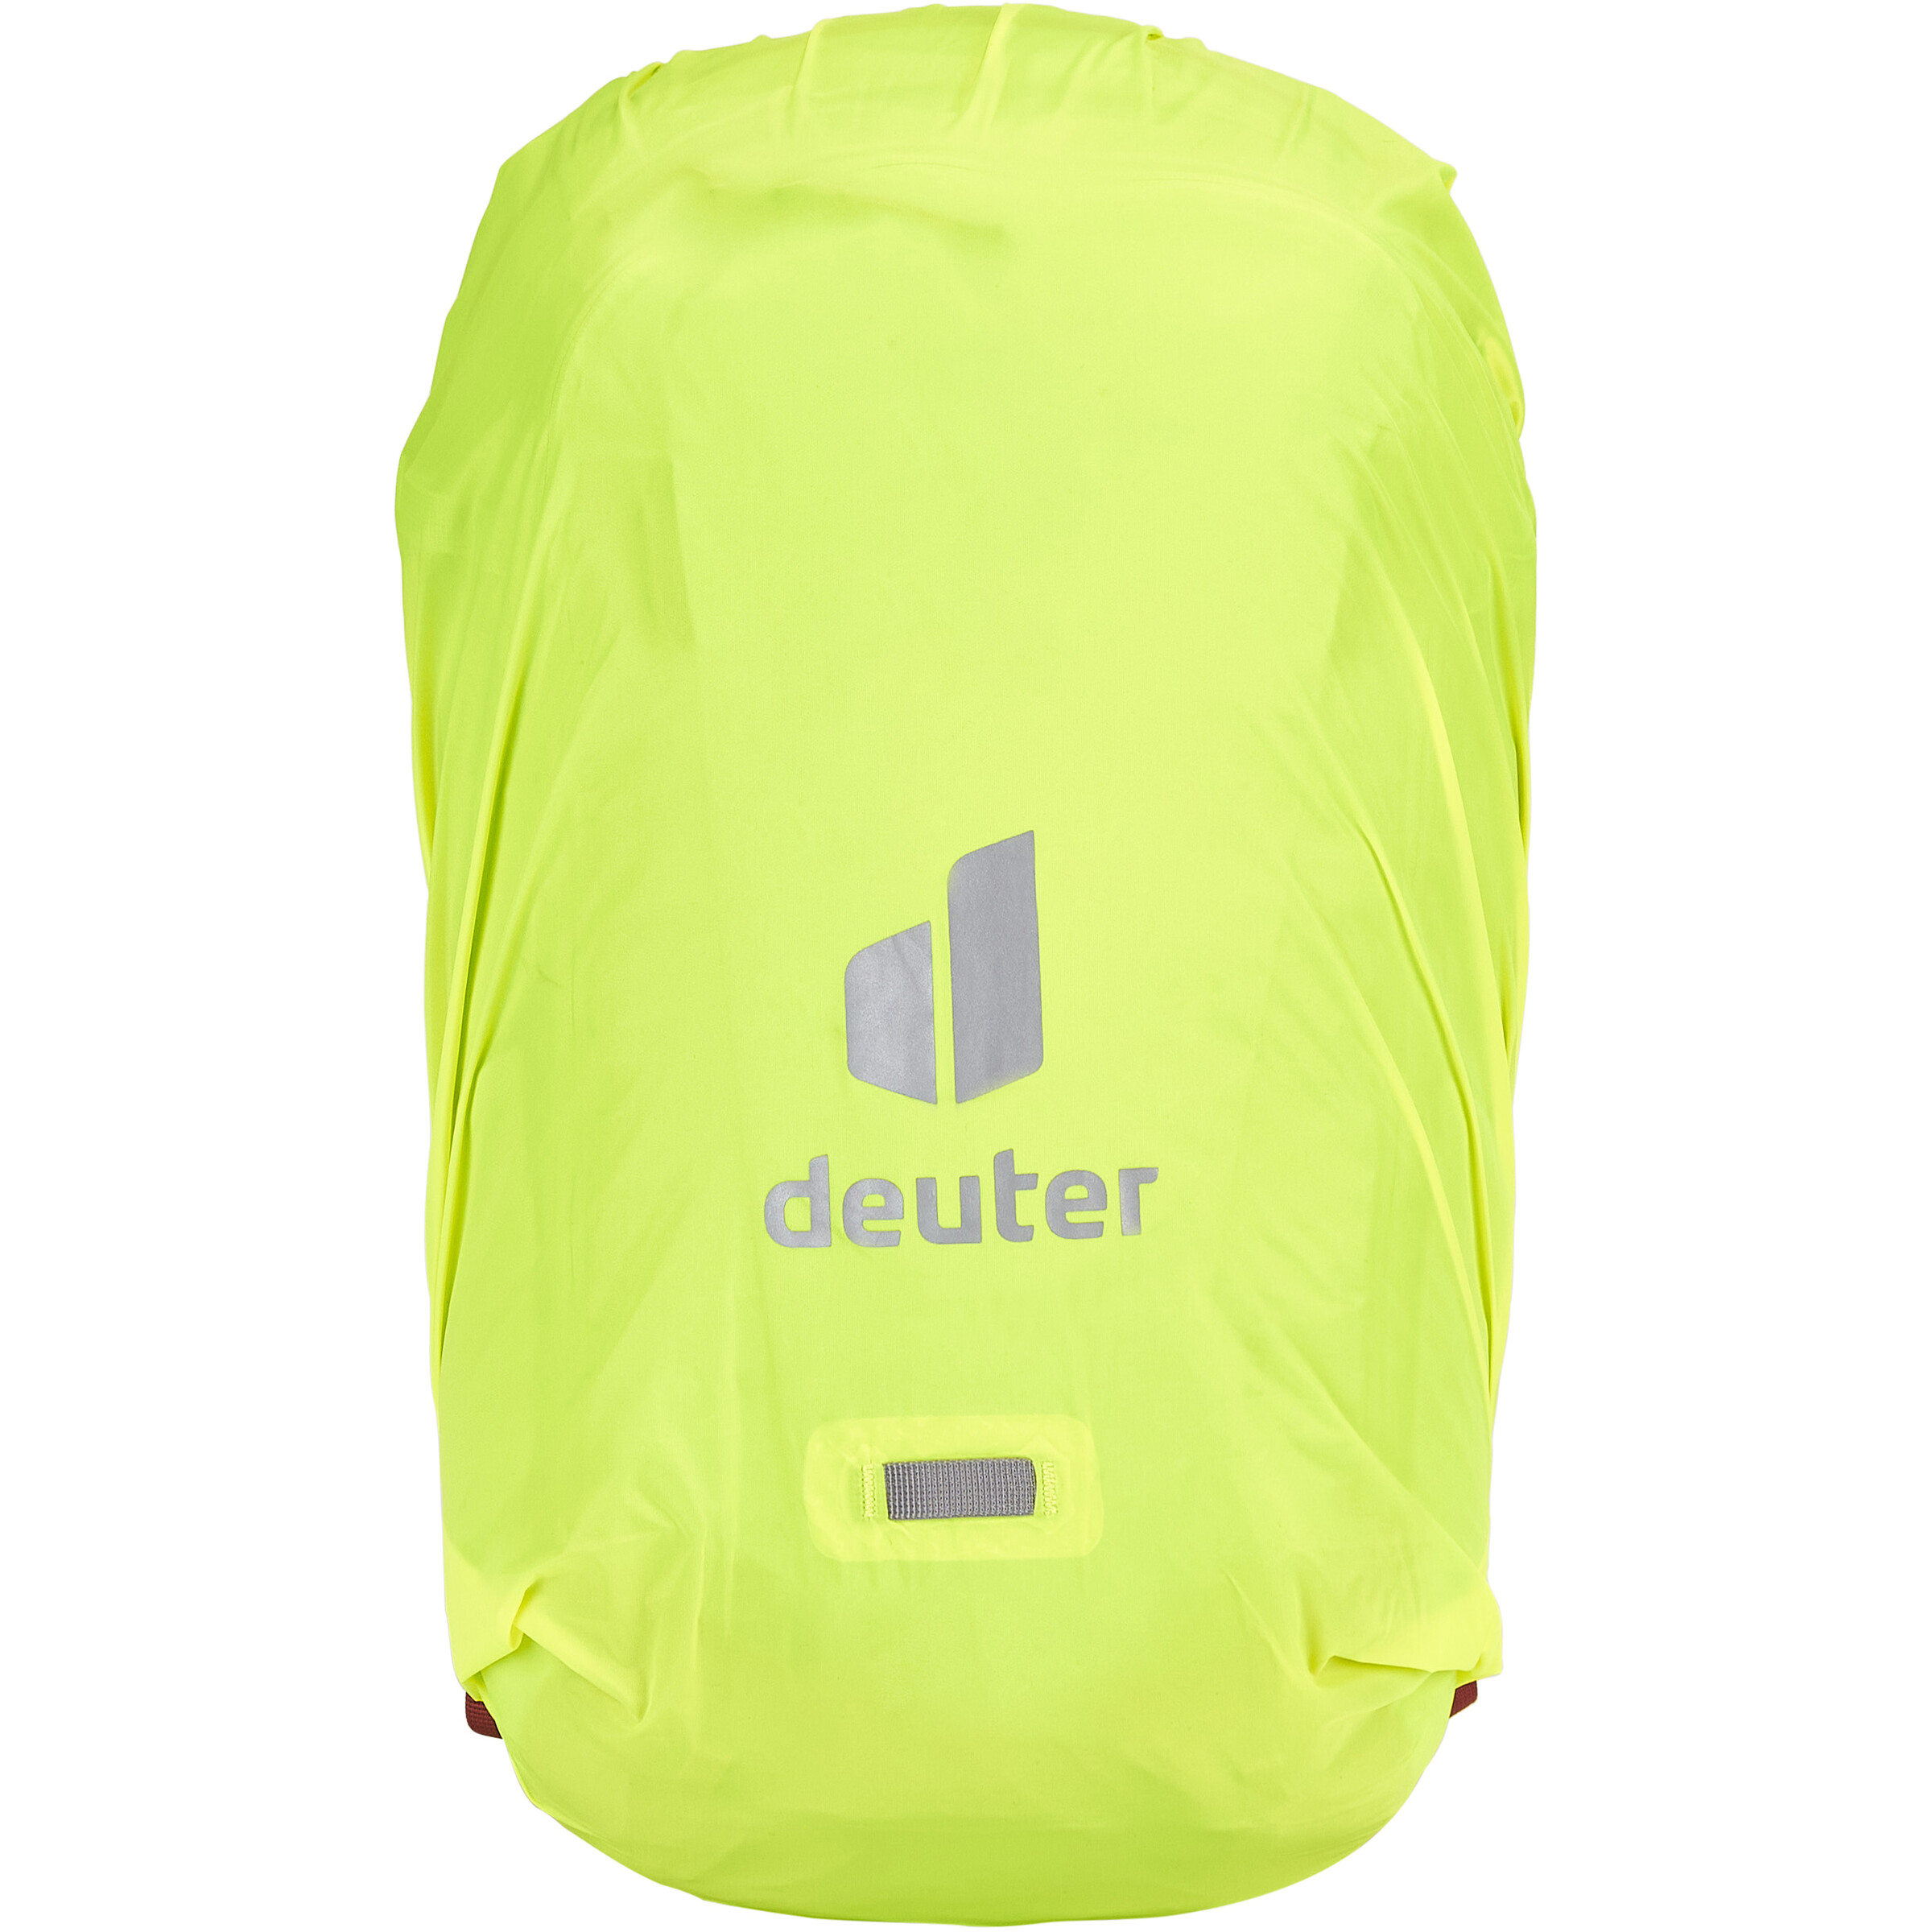 Deuter Flyt 18 SL Women's Back Protector Backpack